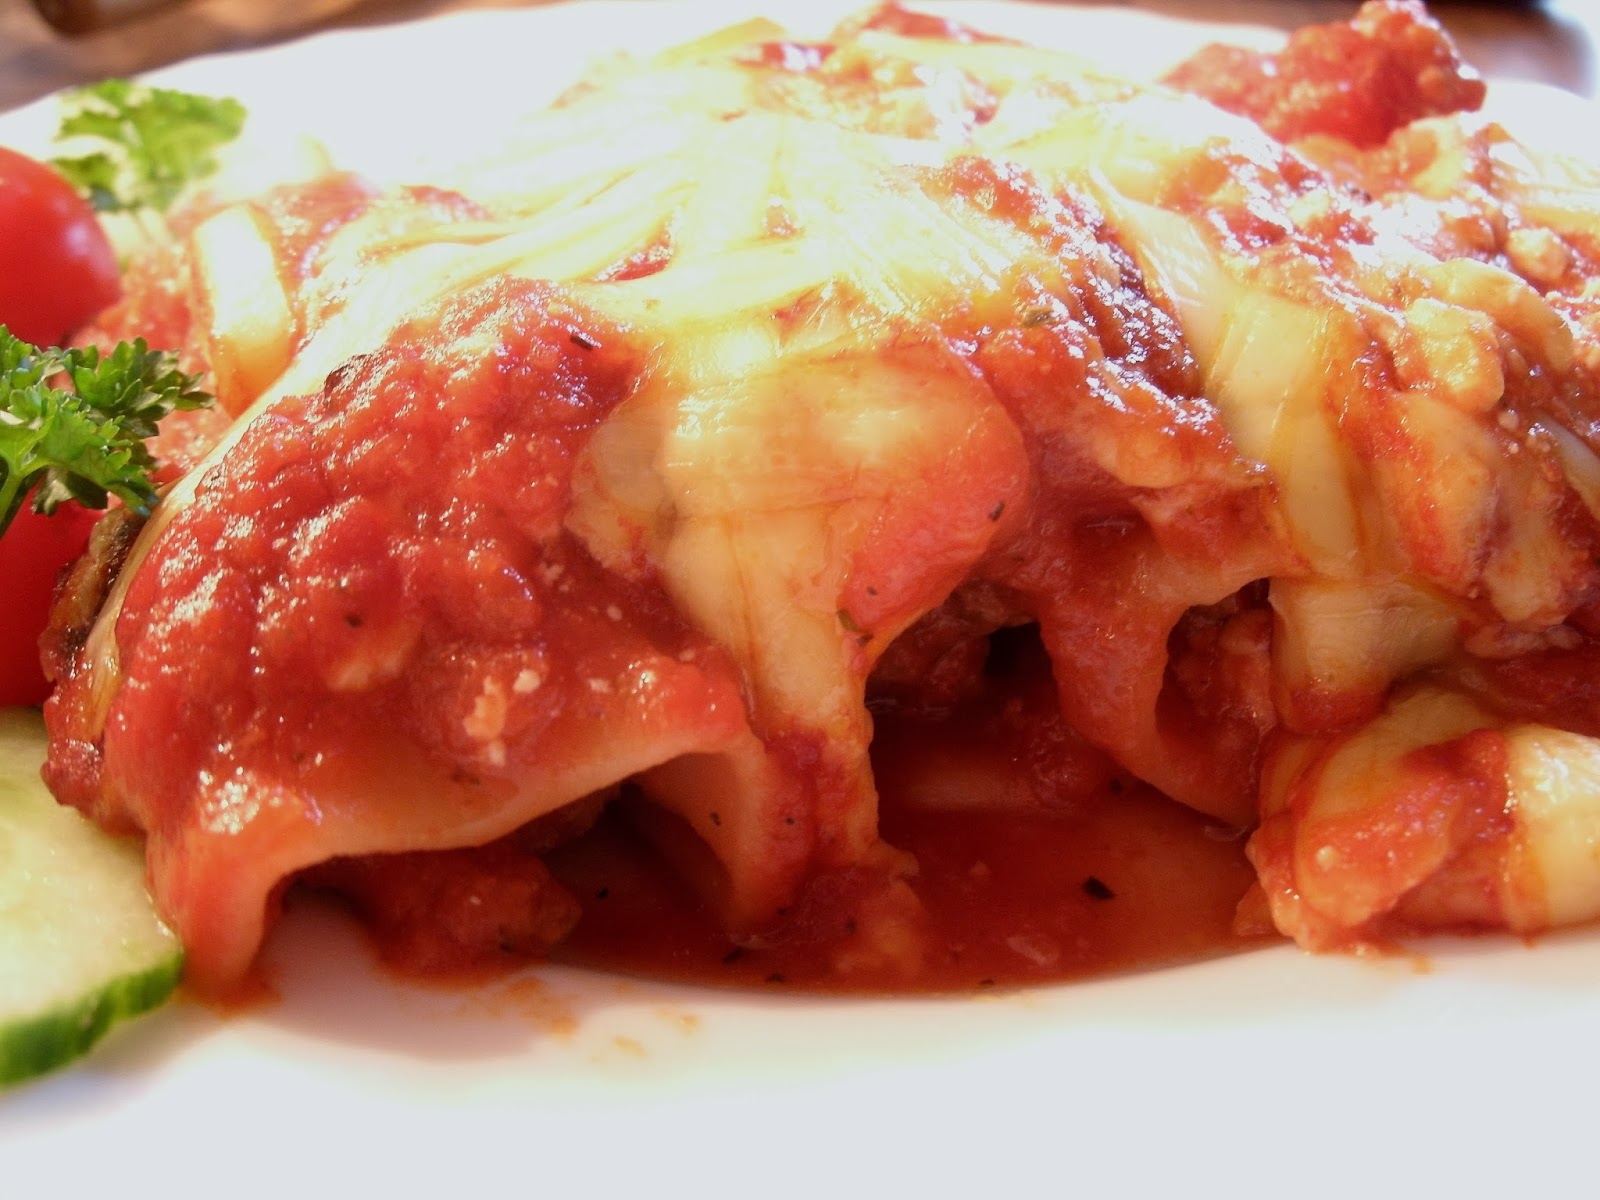 bunter-kochloeffel: Cannelloni mit Hackfleisch- Füllung in Tomatensoße